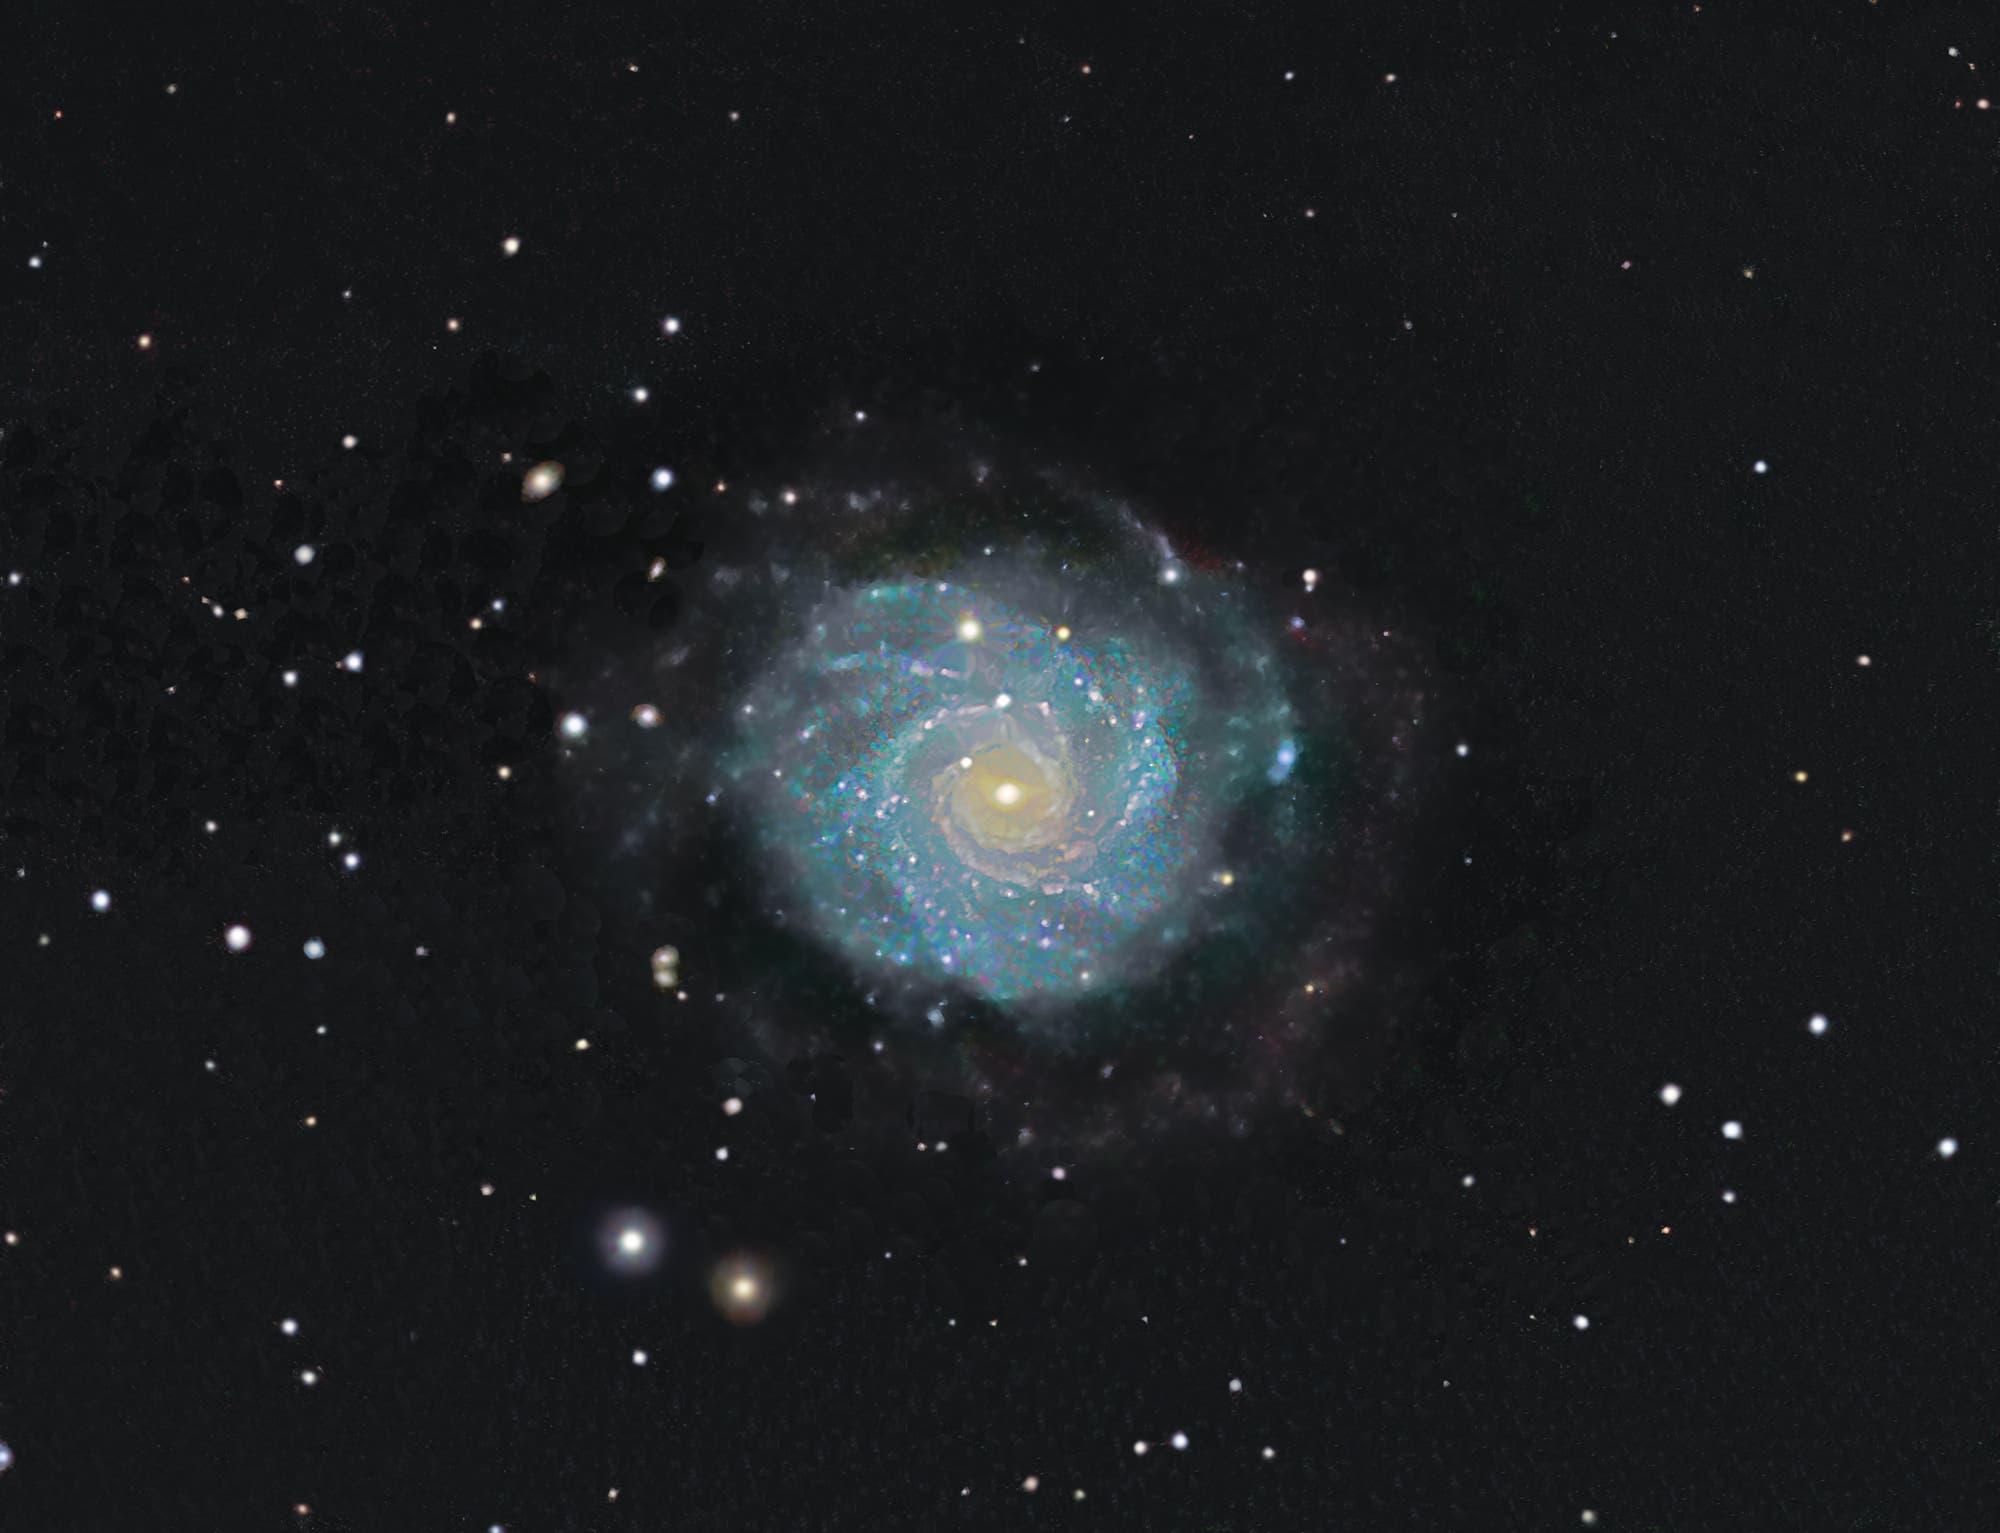 NGC 3344